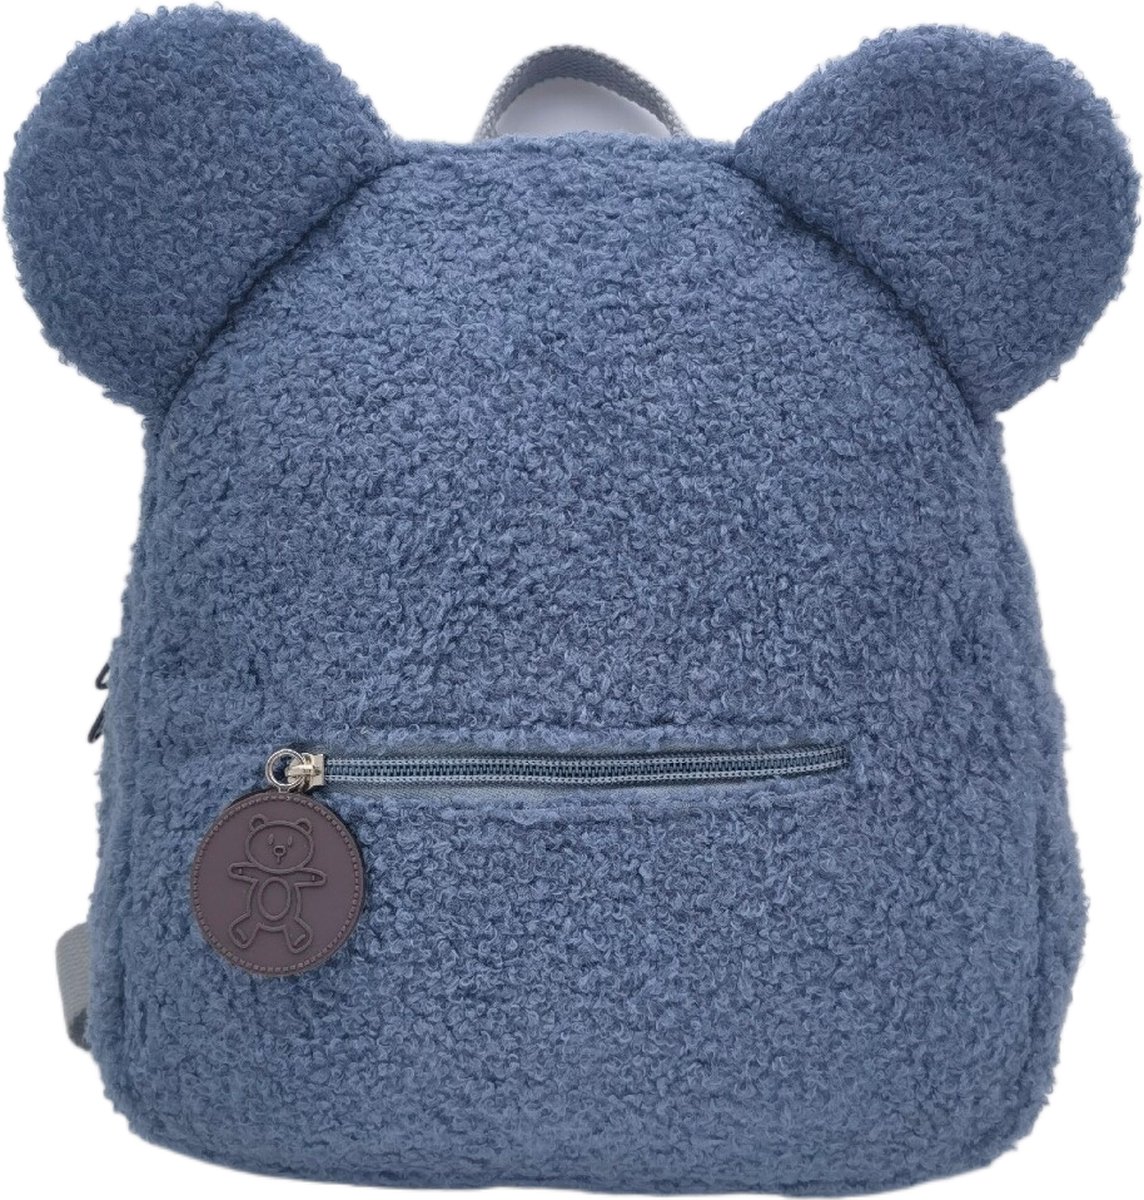 teddy tas / blauw / in 9 verschillende kleuren / teddy rugzak kids / teddy schooltas / kinderen / peuter / kleuter / teddy bag / kind en baby / Teddy tas